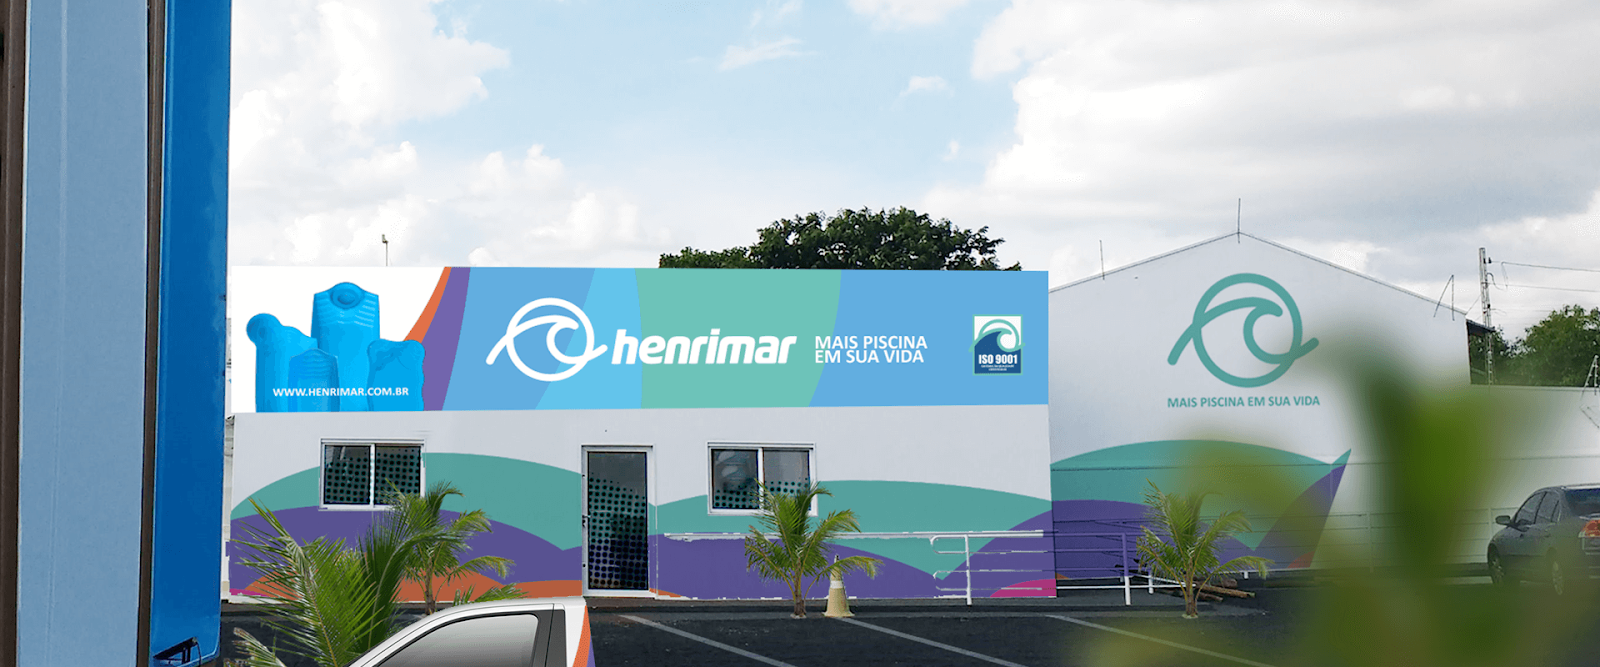 A Henrimar é uma empresa que atua no mercado de piscinas. 